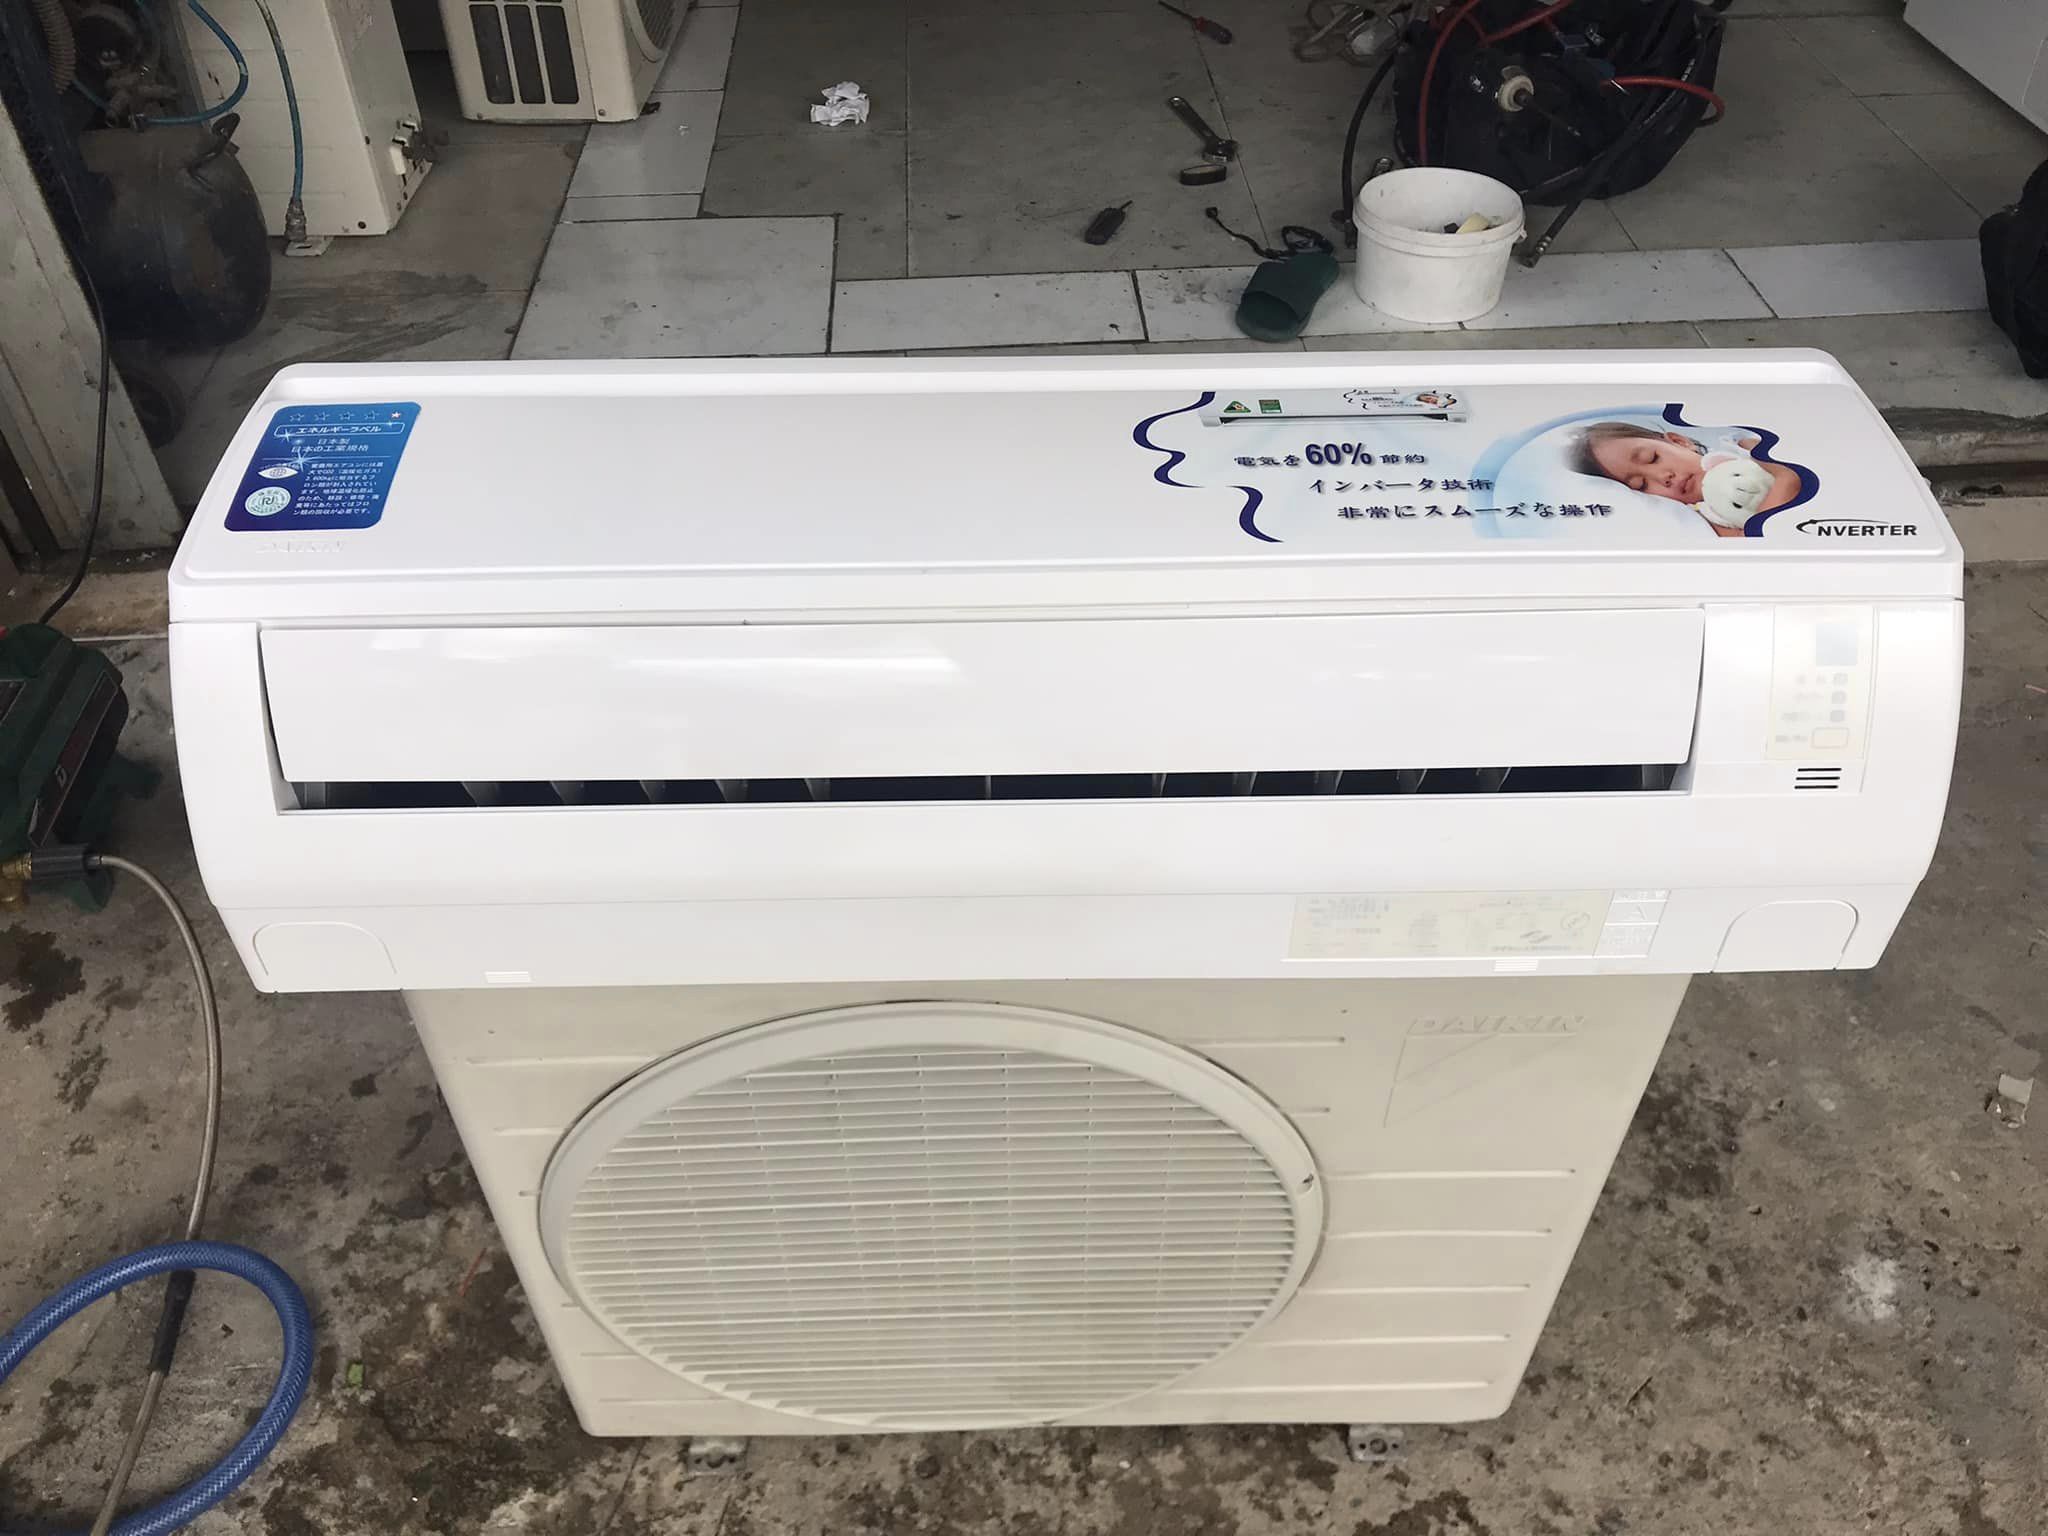 Máy lạnh Daikin (1HP) inverter Nội Địa Nhật